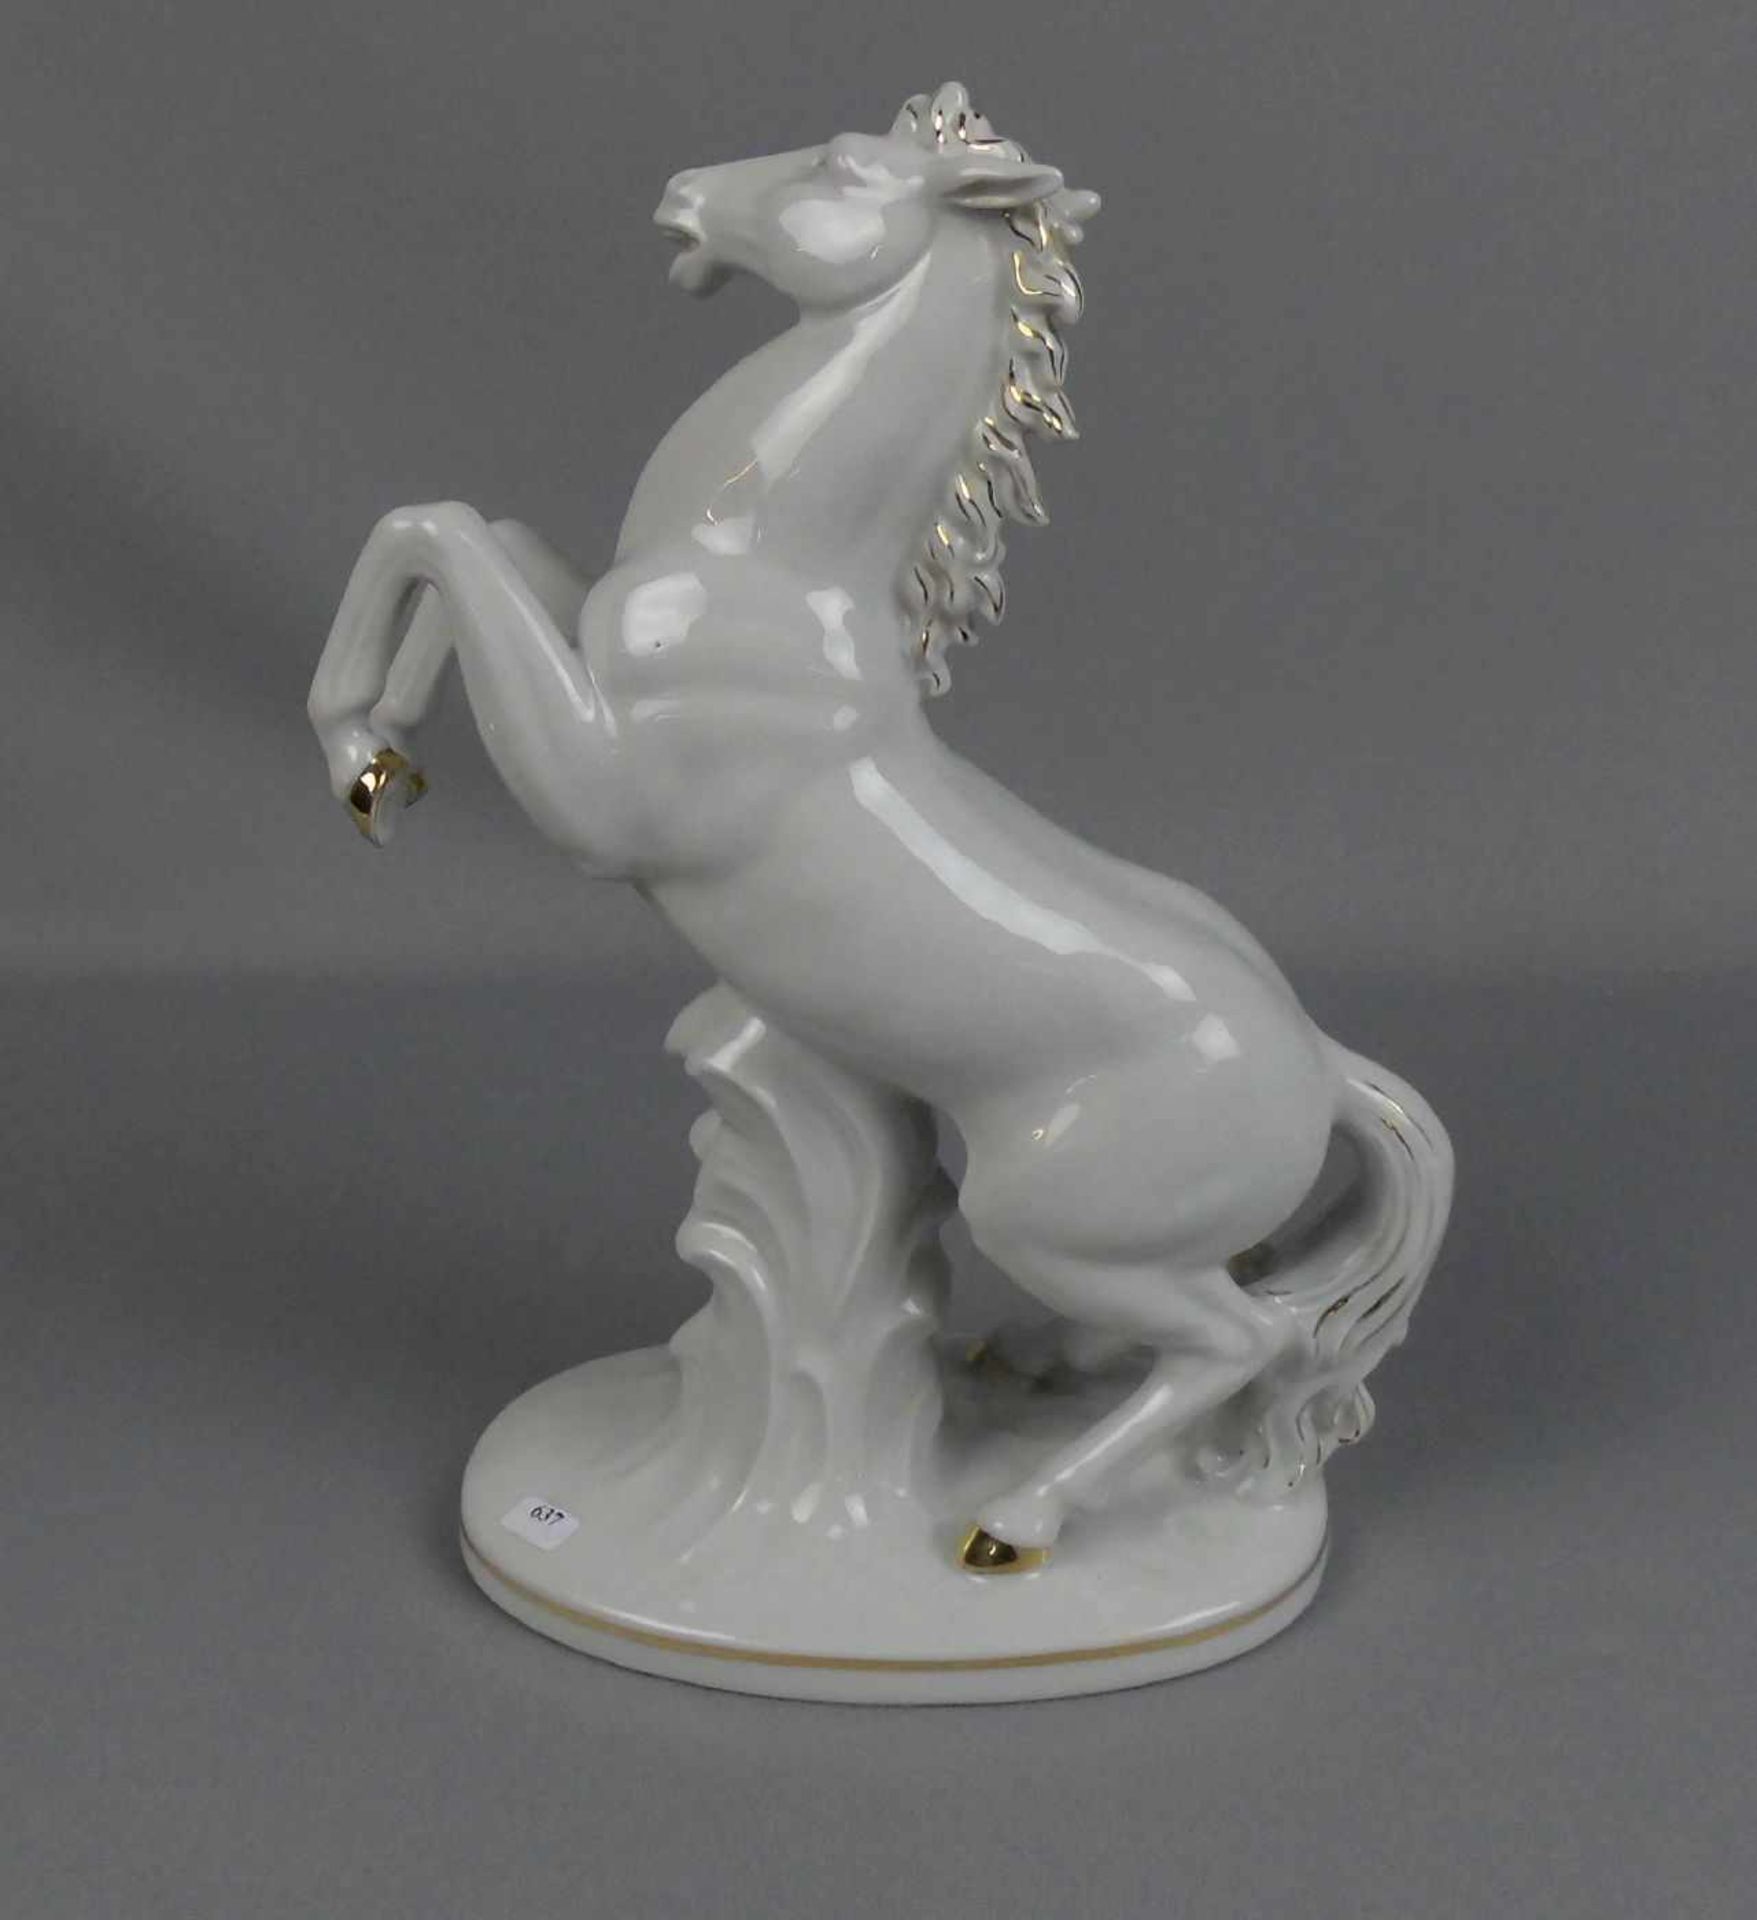 PORZELLANFIGUR "Aufsteigendes Pferd", vertieft gemarkt WKC, Porzellanmanufaktur Weiss / Kühnert & Co